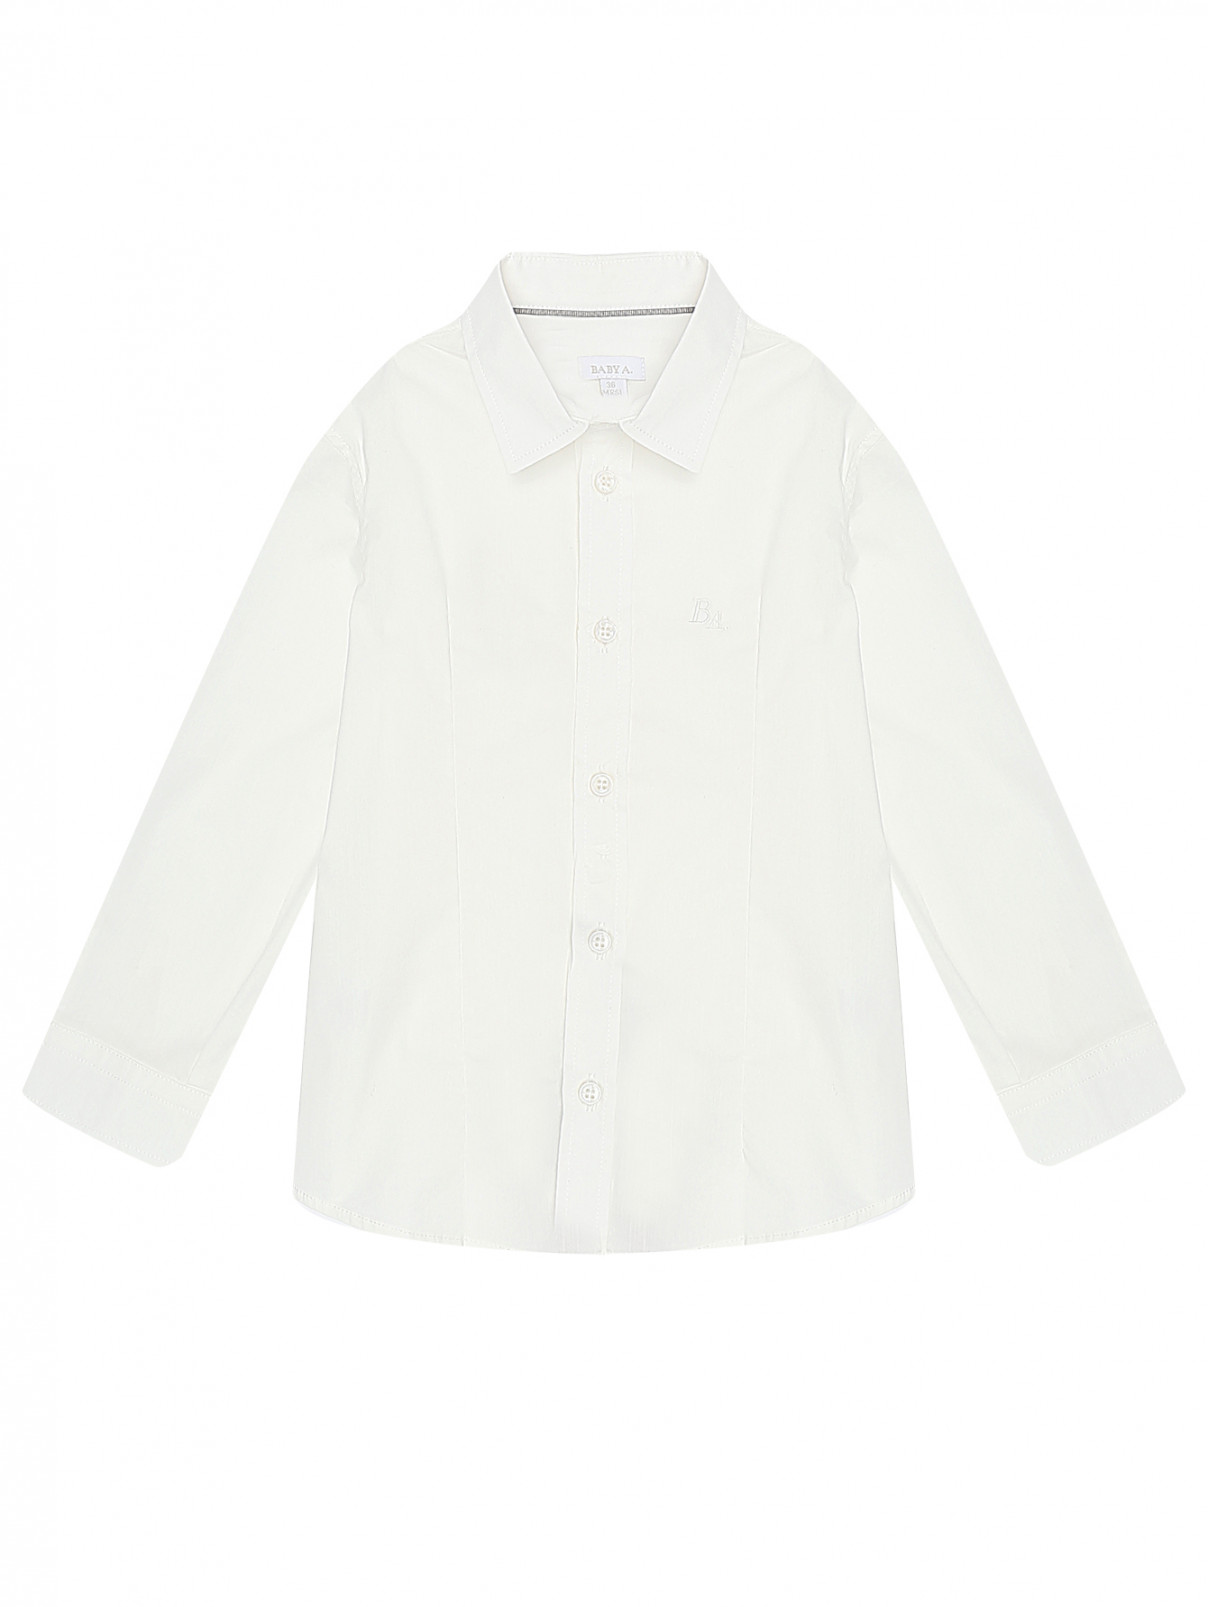 Рубашка из хлопка Treapi  –  Общий вид  – Цвет:  Белый